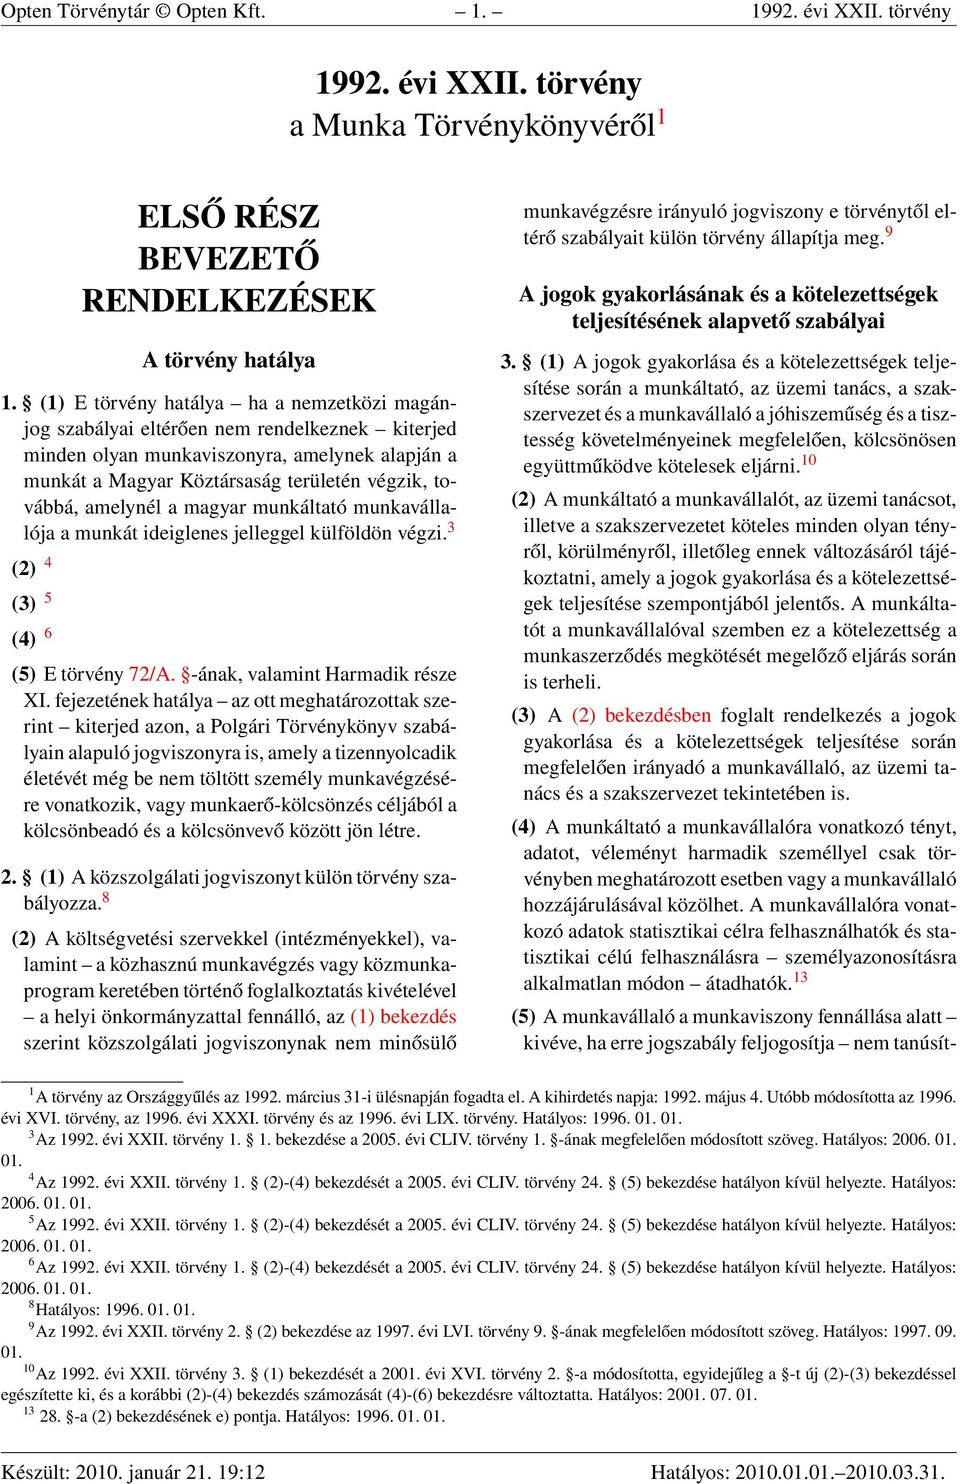 amelynél a magyar munkáltató munkavállalója a munkát ideiglenes jelleggel külföldön végzi. 3 (2) 4 (3) 5 (4) 6 (5) E törvény 72/A. -ának, valamint Harmadik része XI.